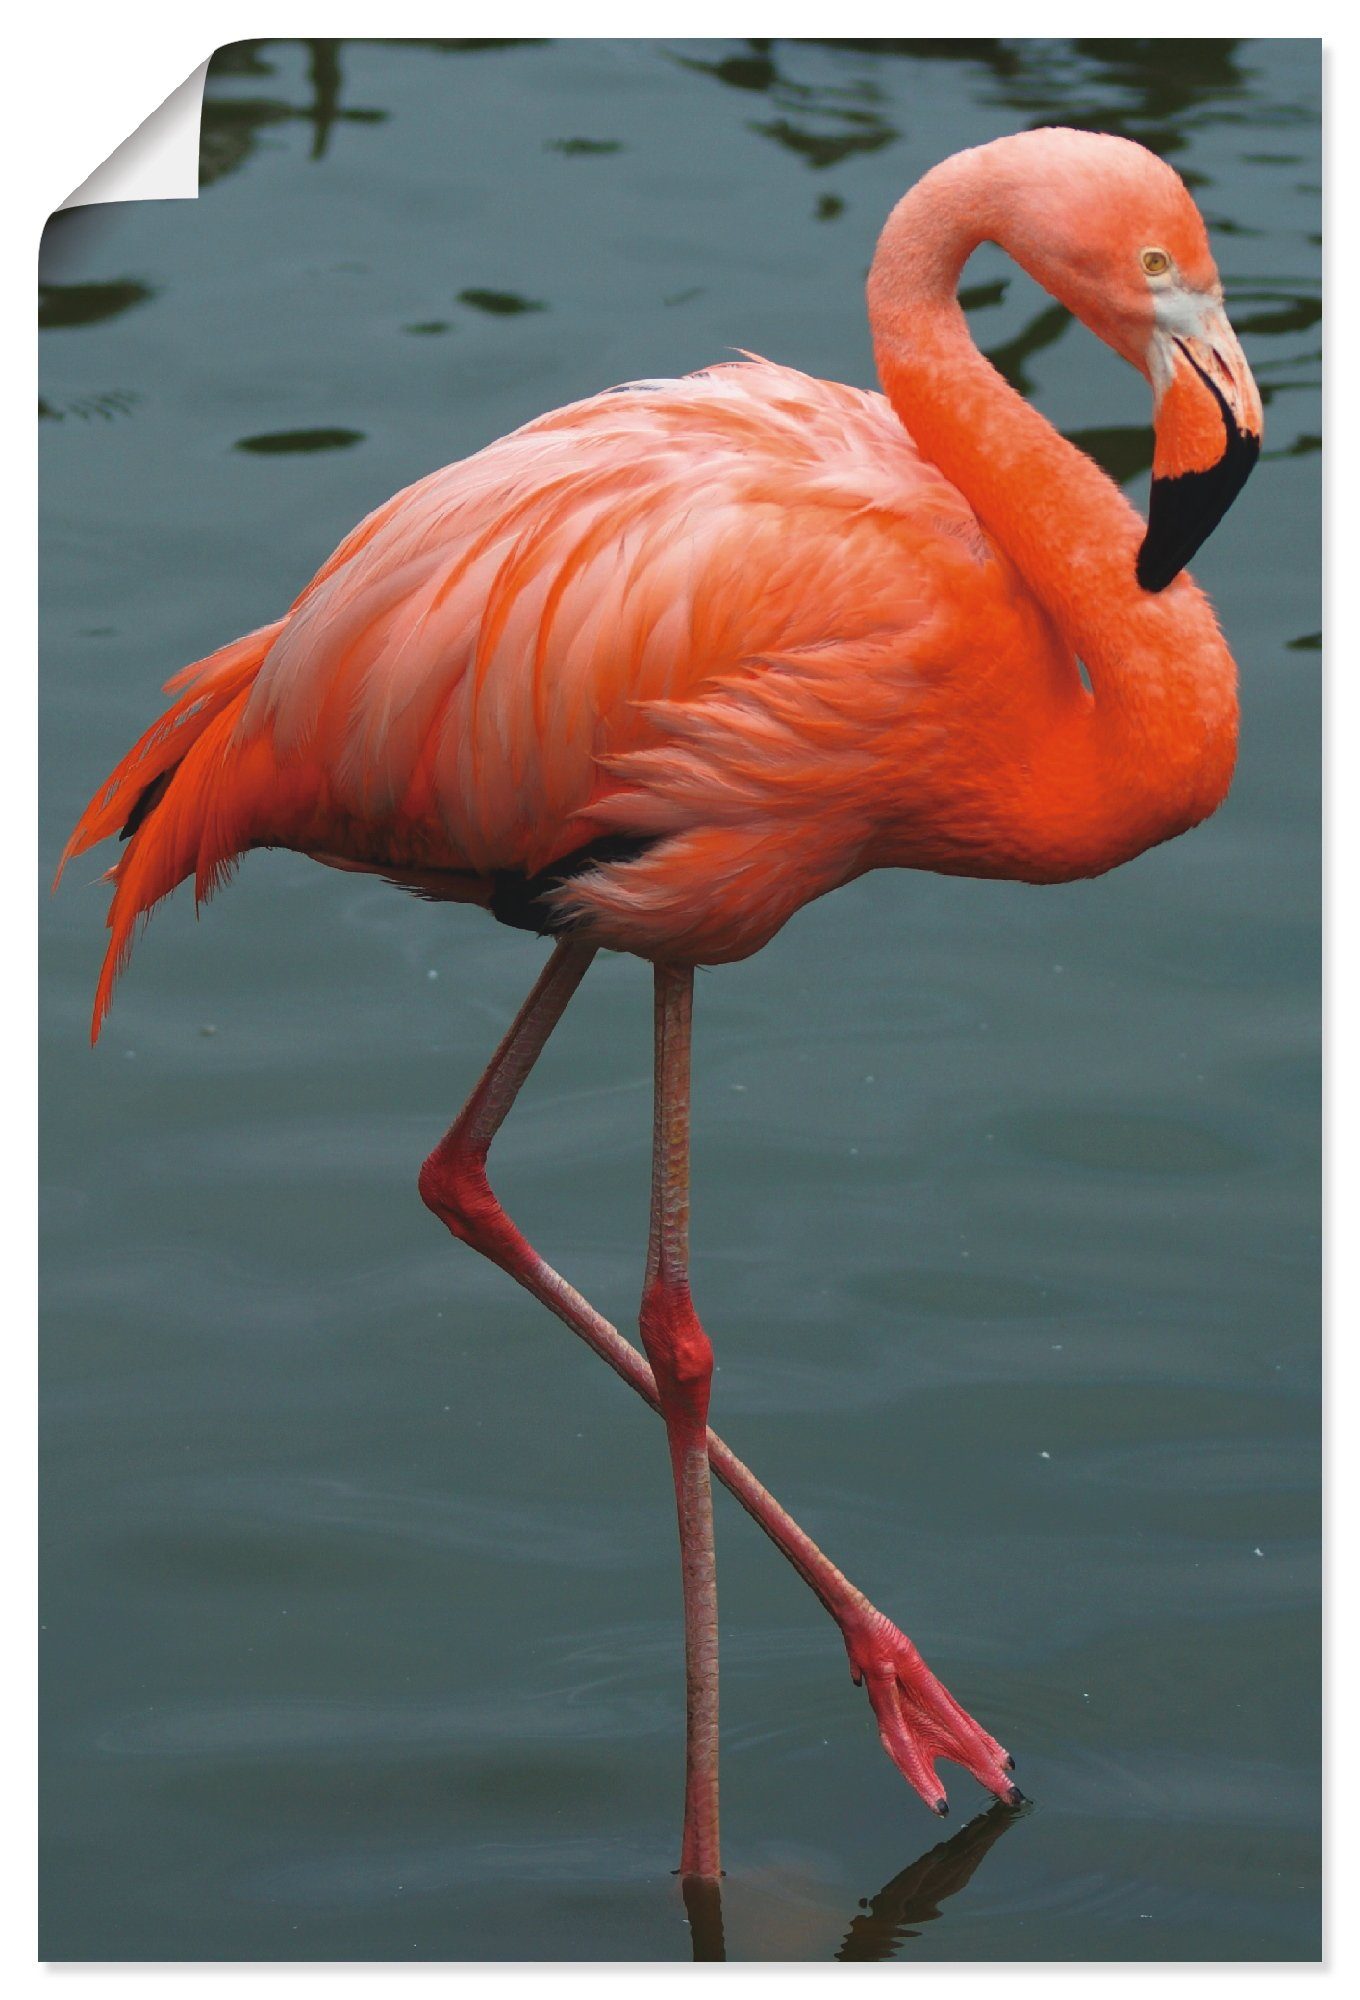 Artland Artprint Flamingo Balans in vele afmetingen & productsoorten -artprint op linnen, poster, muursticker / wandfolie ook geschikt voor de badkamer (1 stuk)